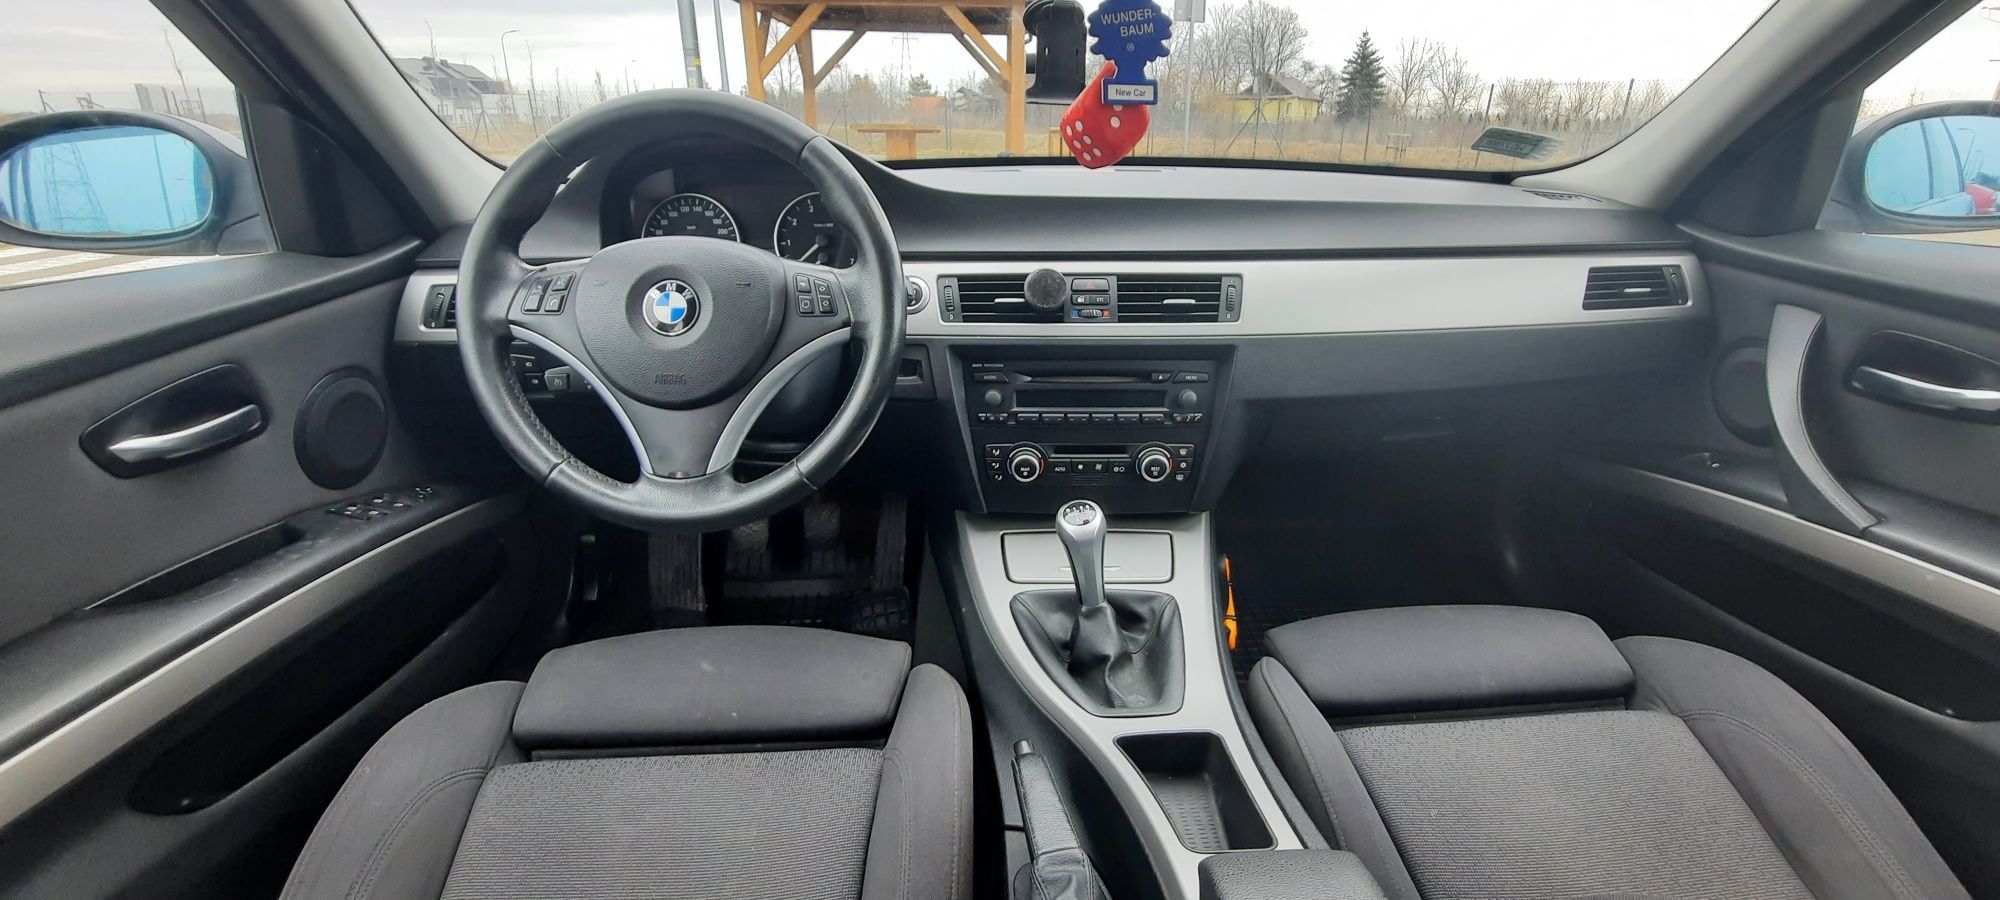 BMW E91 318i. 2007r. 2.0 Benzyna. Stan BDB.